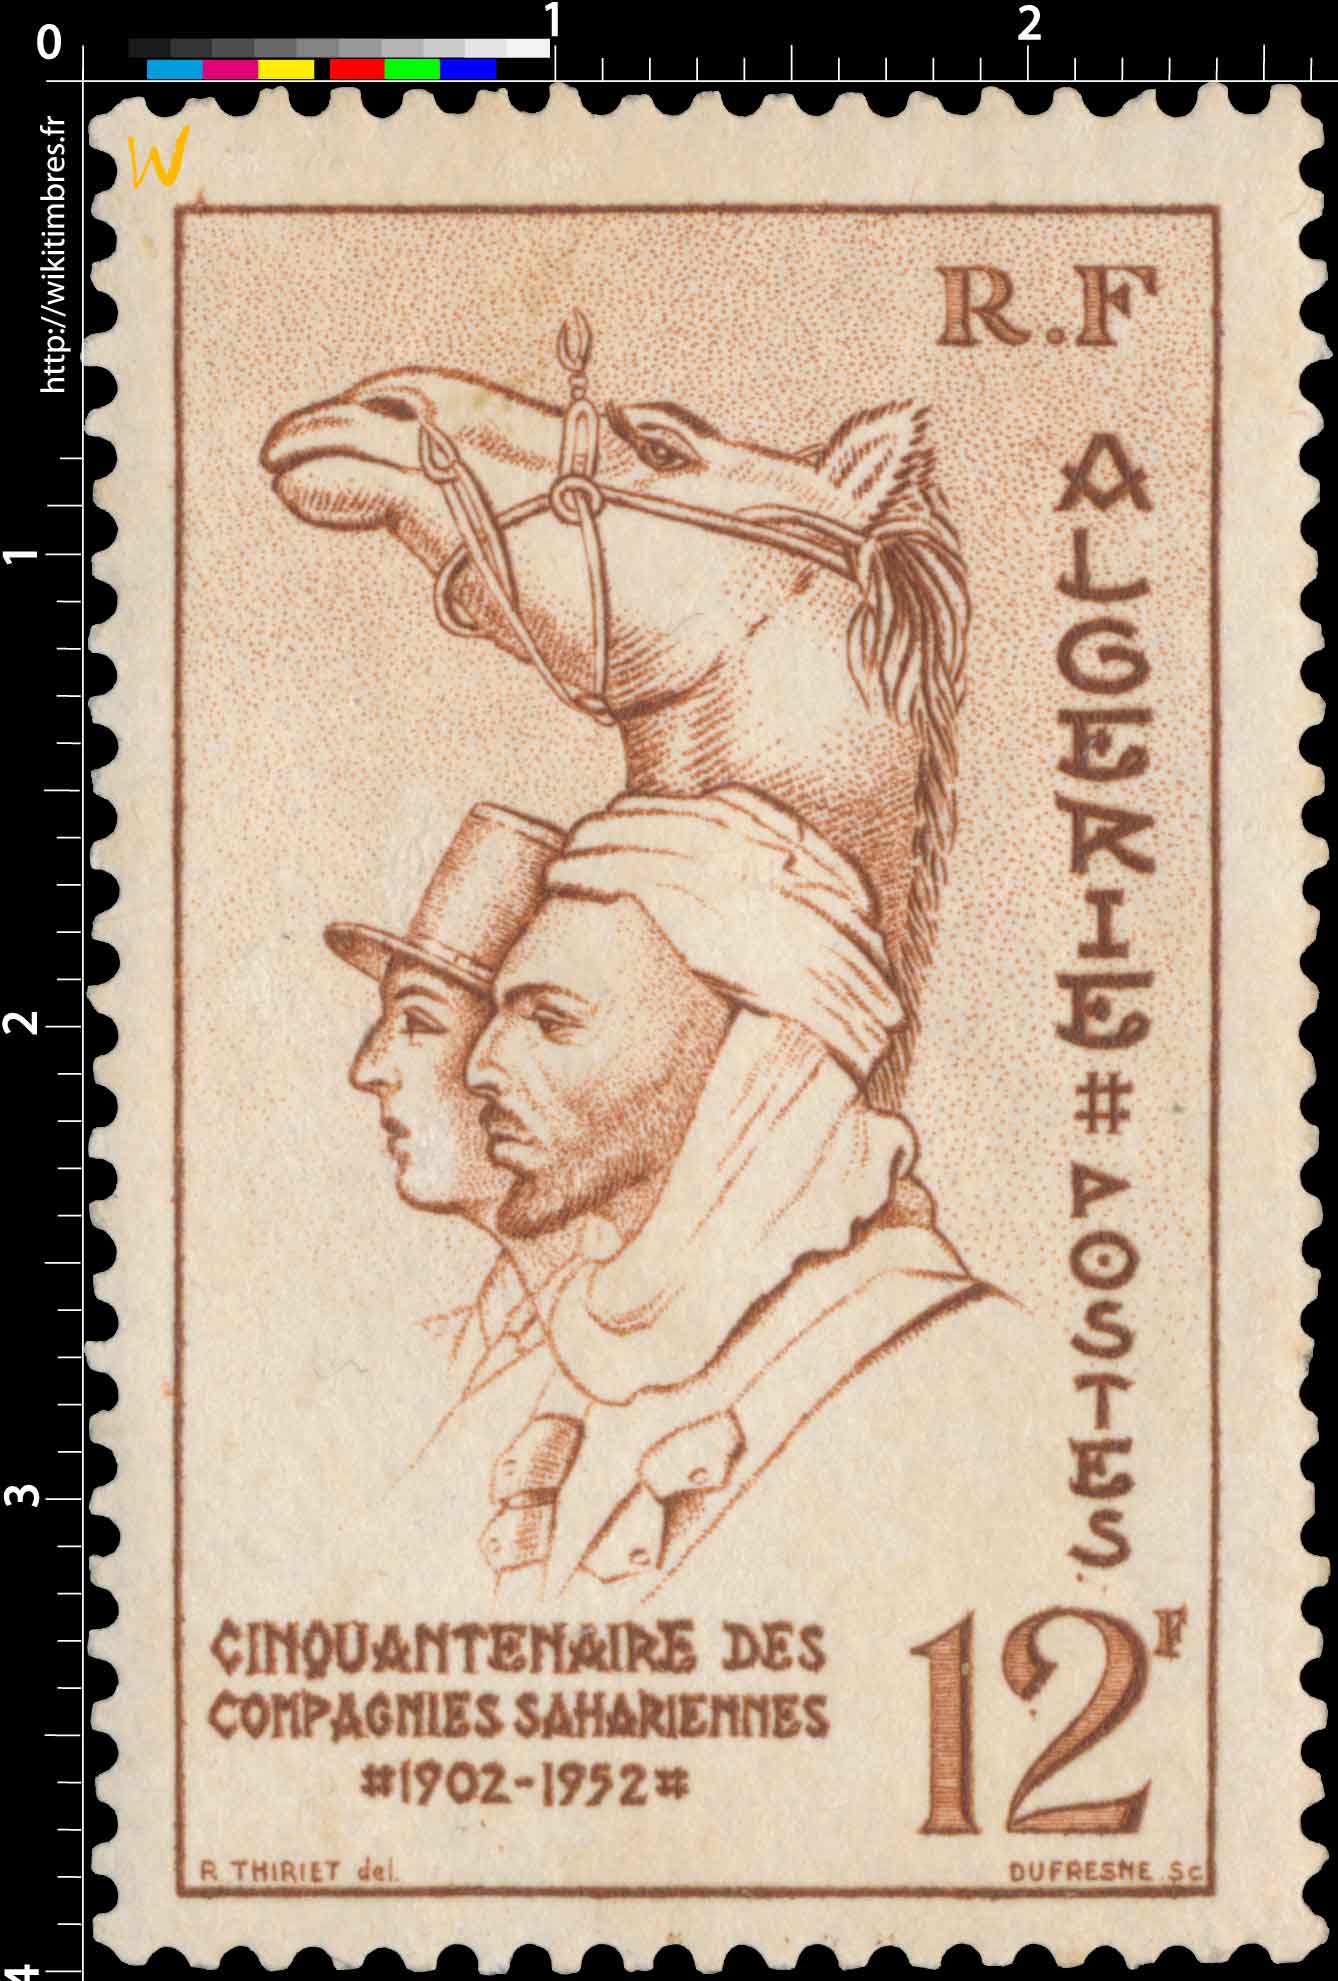 Algérie - Cinquantenaire des Compagnies sahariennes 1902 - 1952